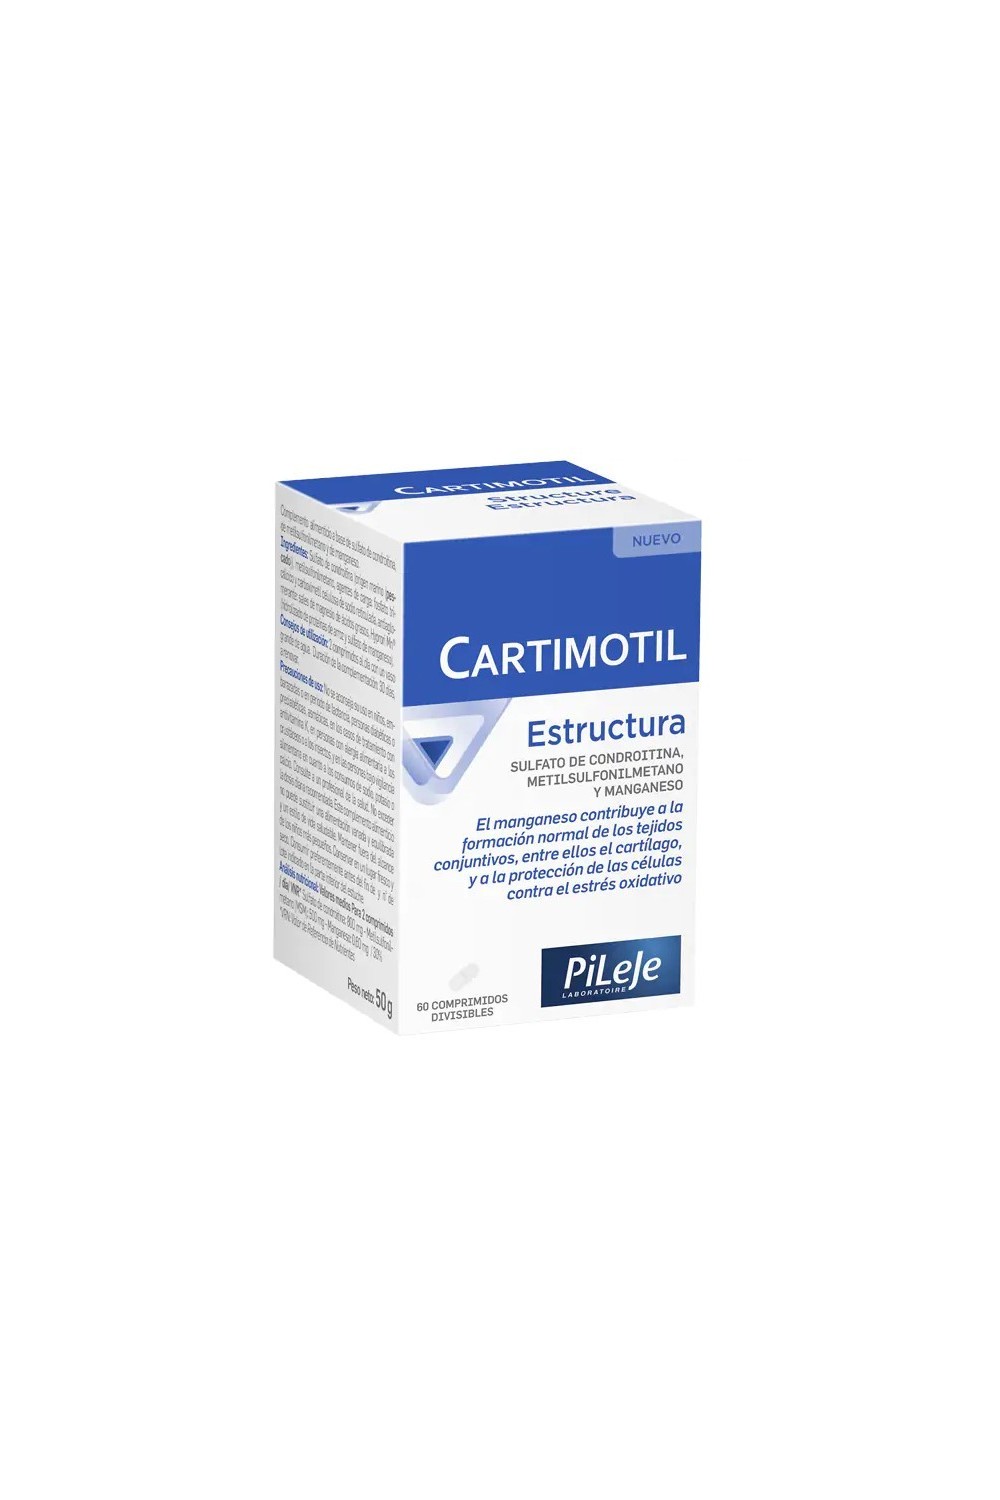 Pileje Cartimotil Structure 60 Tablets